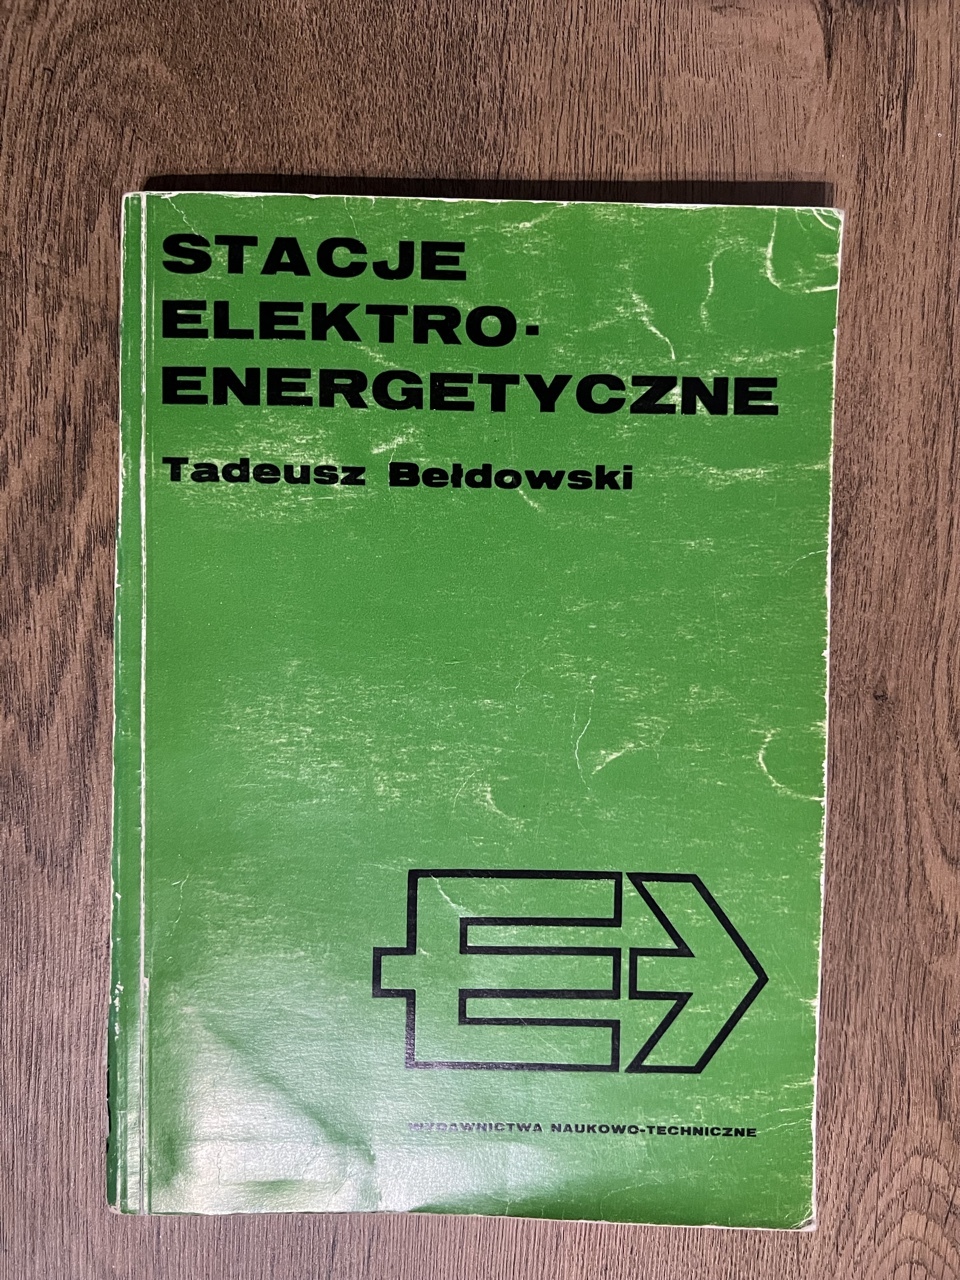 stacje-elektroenergetyczne-tadeusz-be-dowski-warszawa-kup-teraz-na